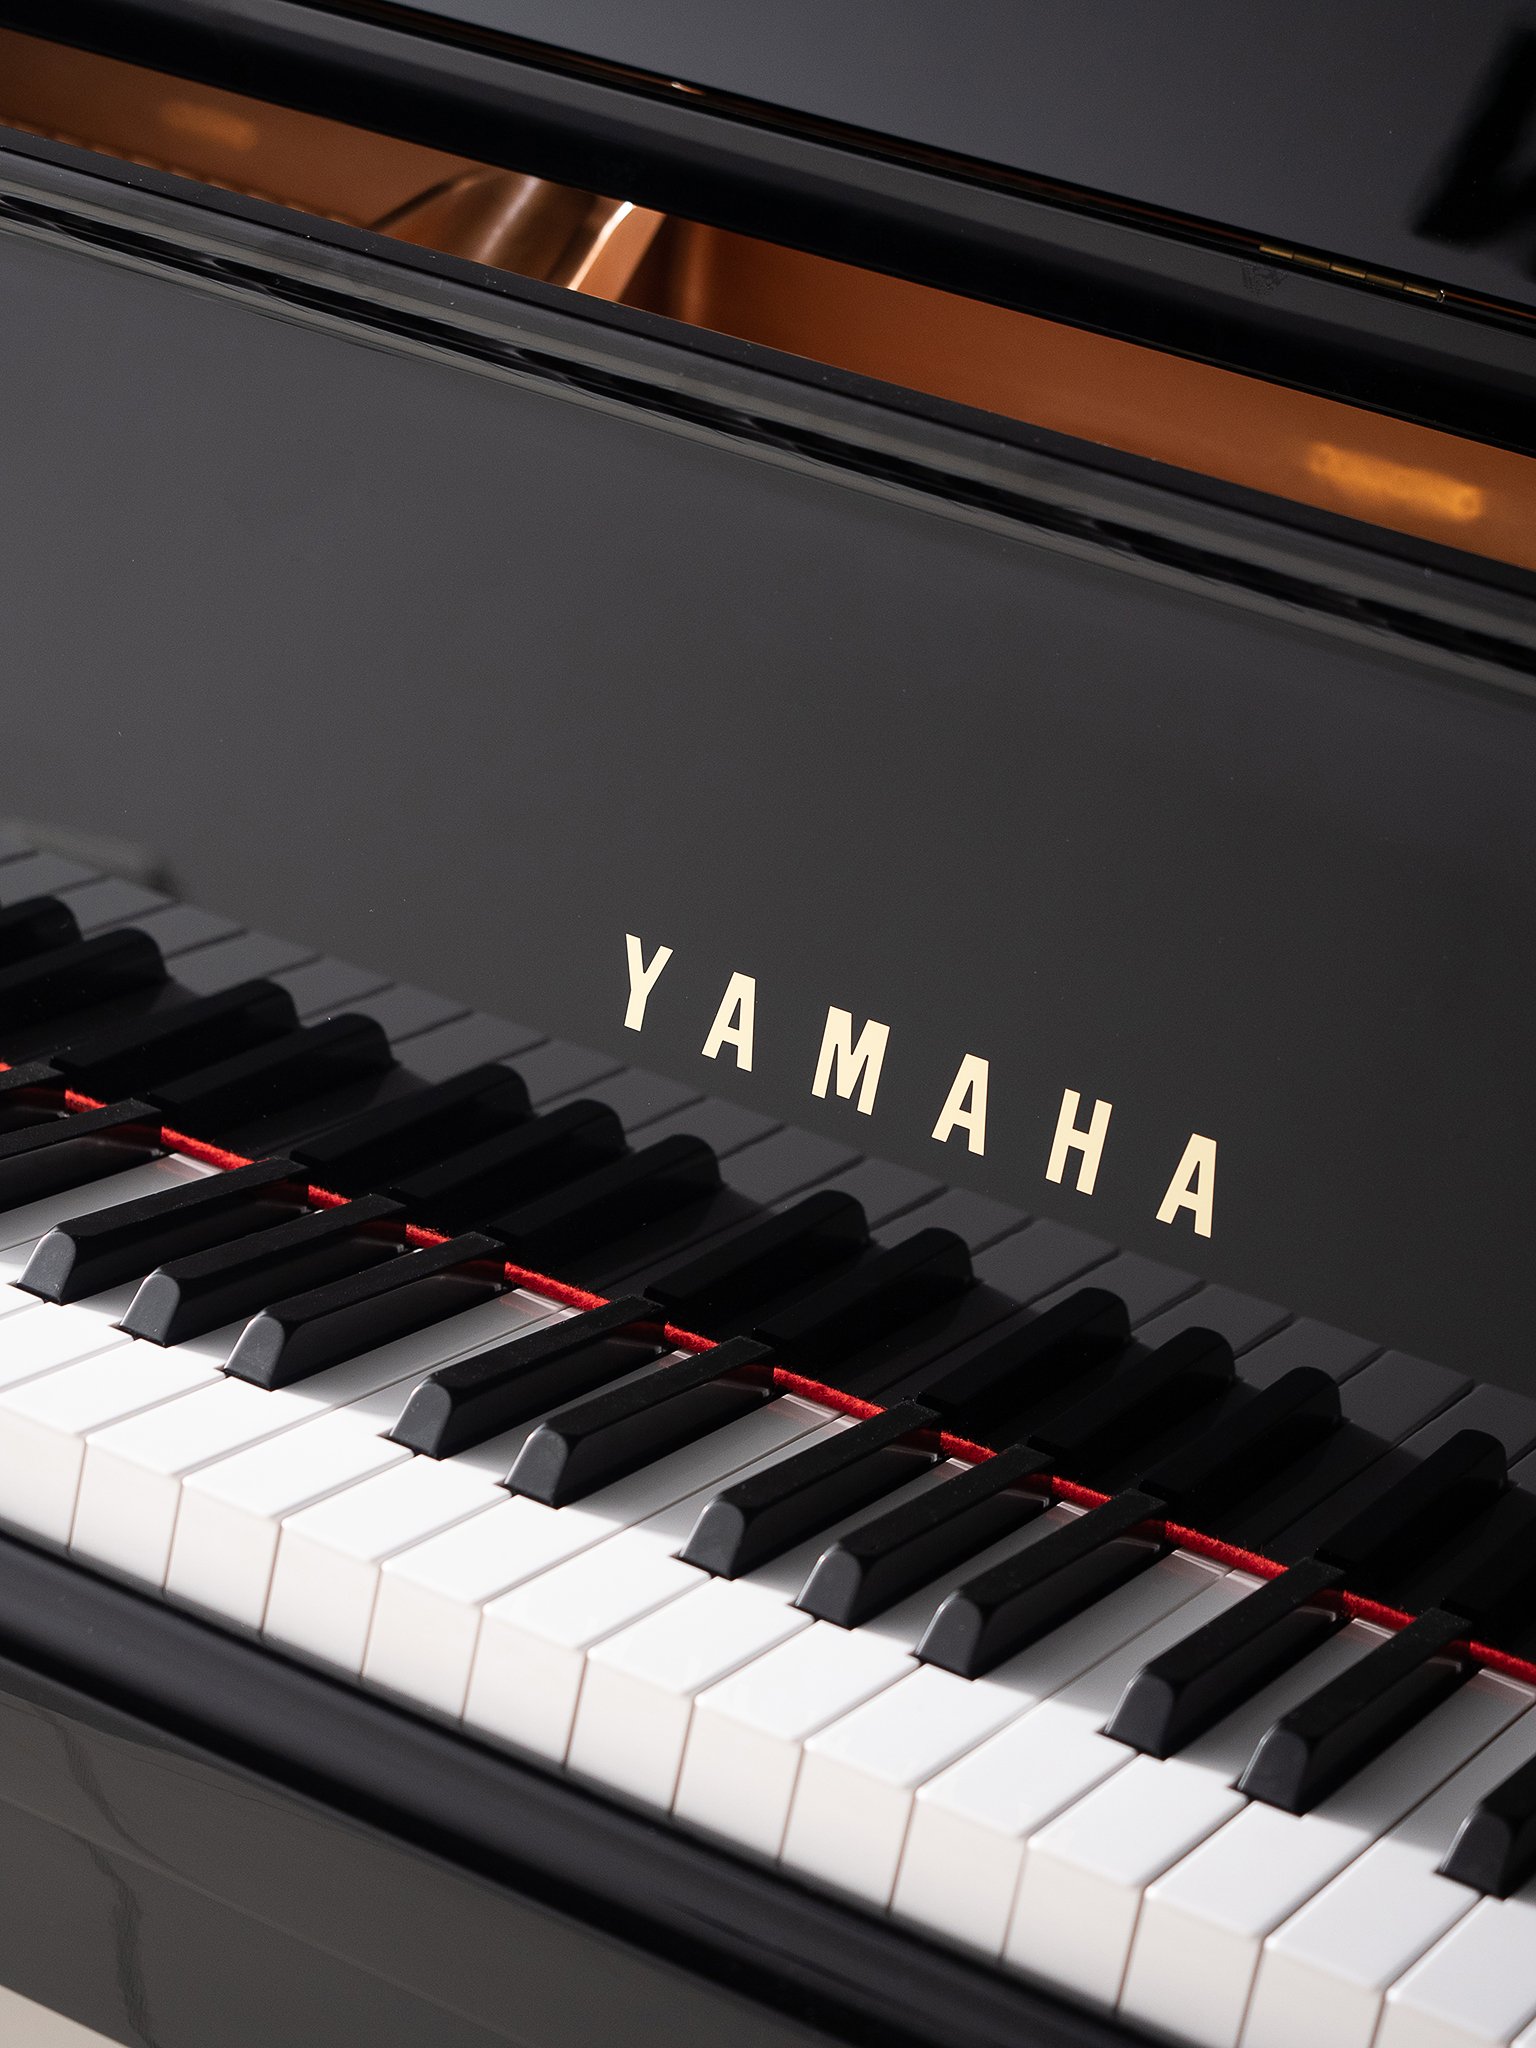 Рояль Yamaha. Рояль Yamaha CFX. Пианино Yamaha m2 SDW. Рояль Yamaha c1 e/р. Yamaha cvp 809